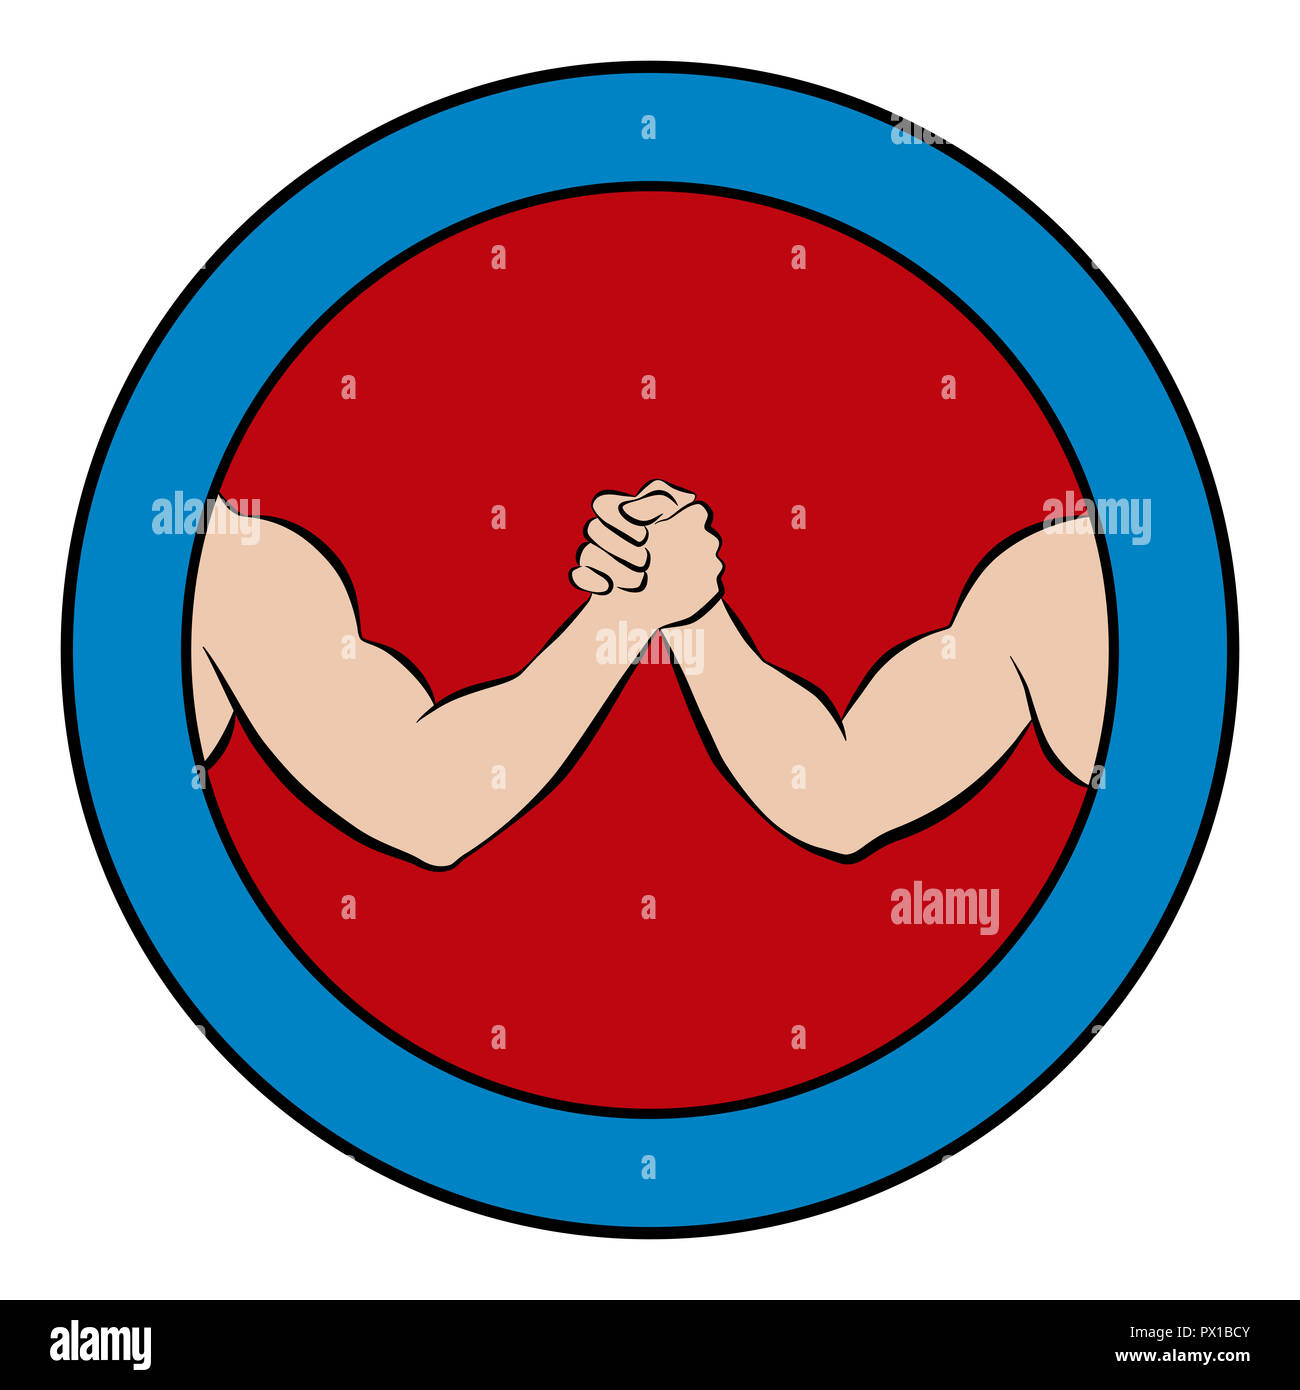 Braccio del logo di wrestling. Pittogramma rotondo con centro rosso e cornice blu. Illustrazione di due forti, bracci muscolare in concorrenza. Foto Stock